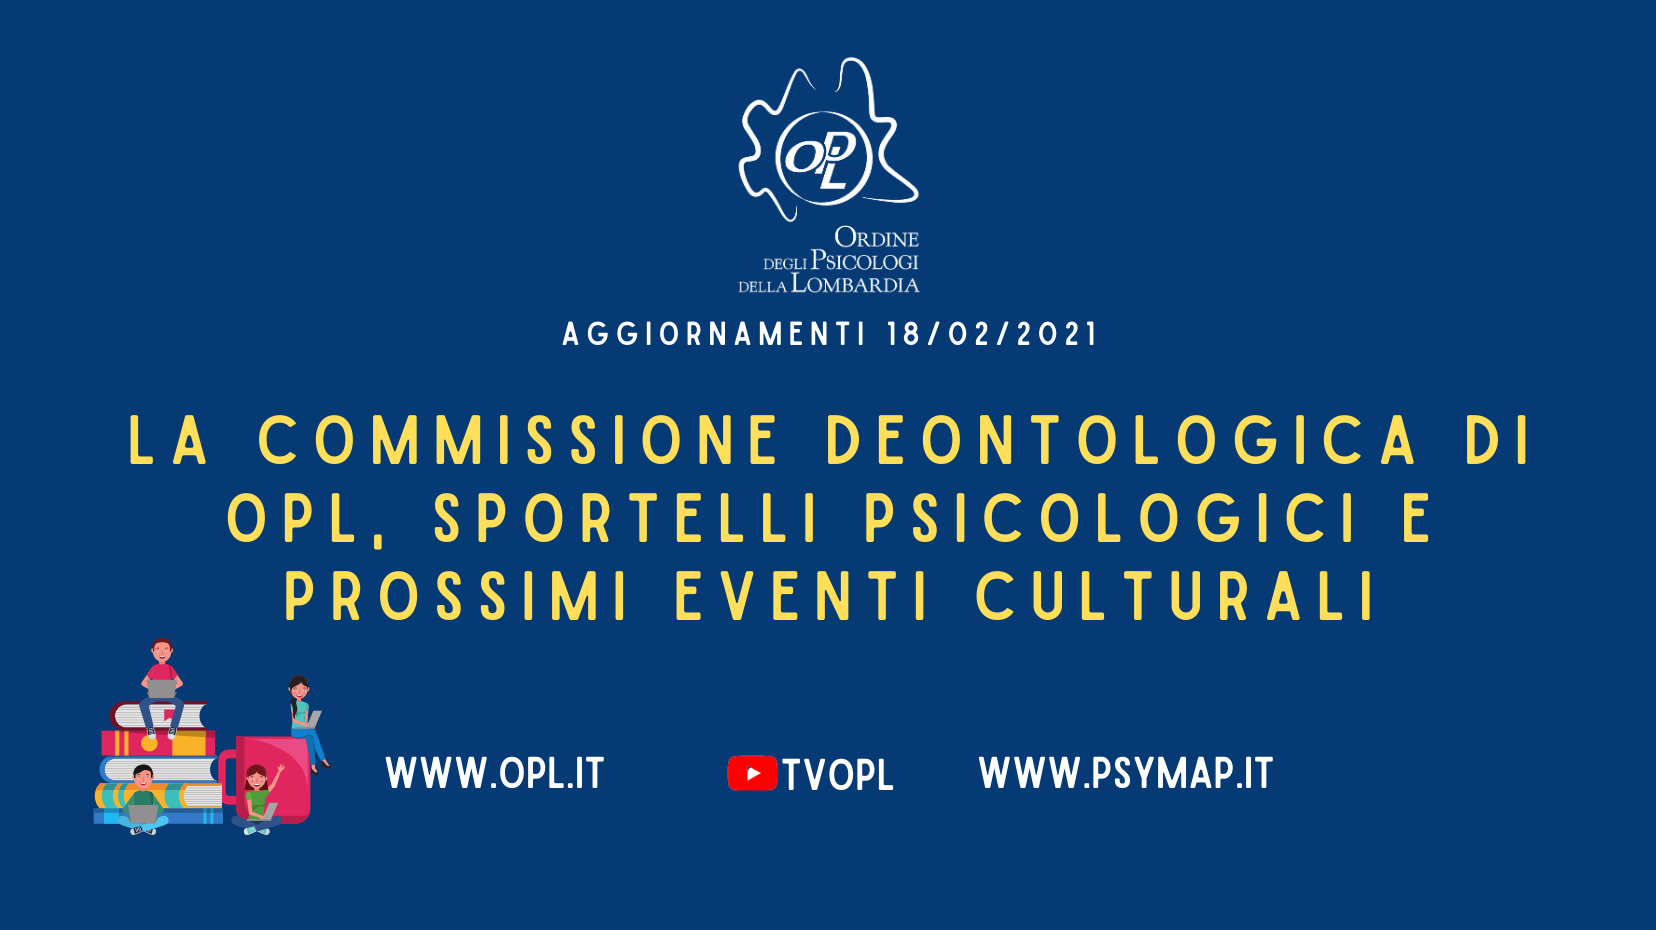 Aggiornamenti del 18/02/2021 - La Commissione Deontologica dell'OPL, sportelli psicologici e prossimi eventi culturali